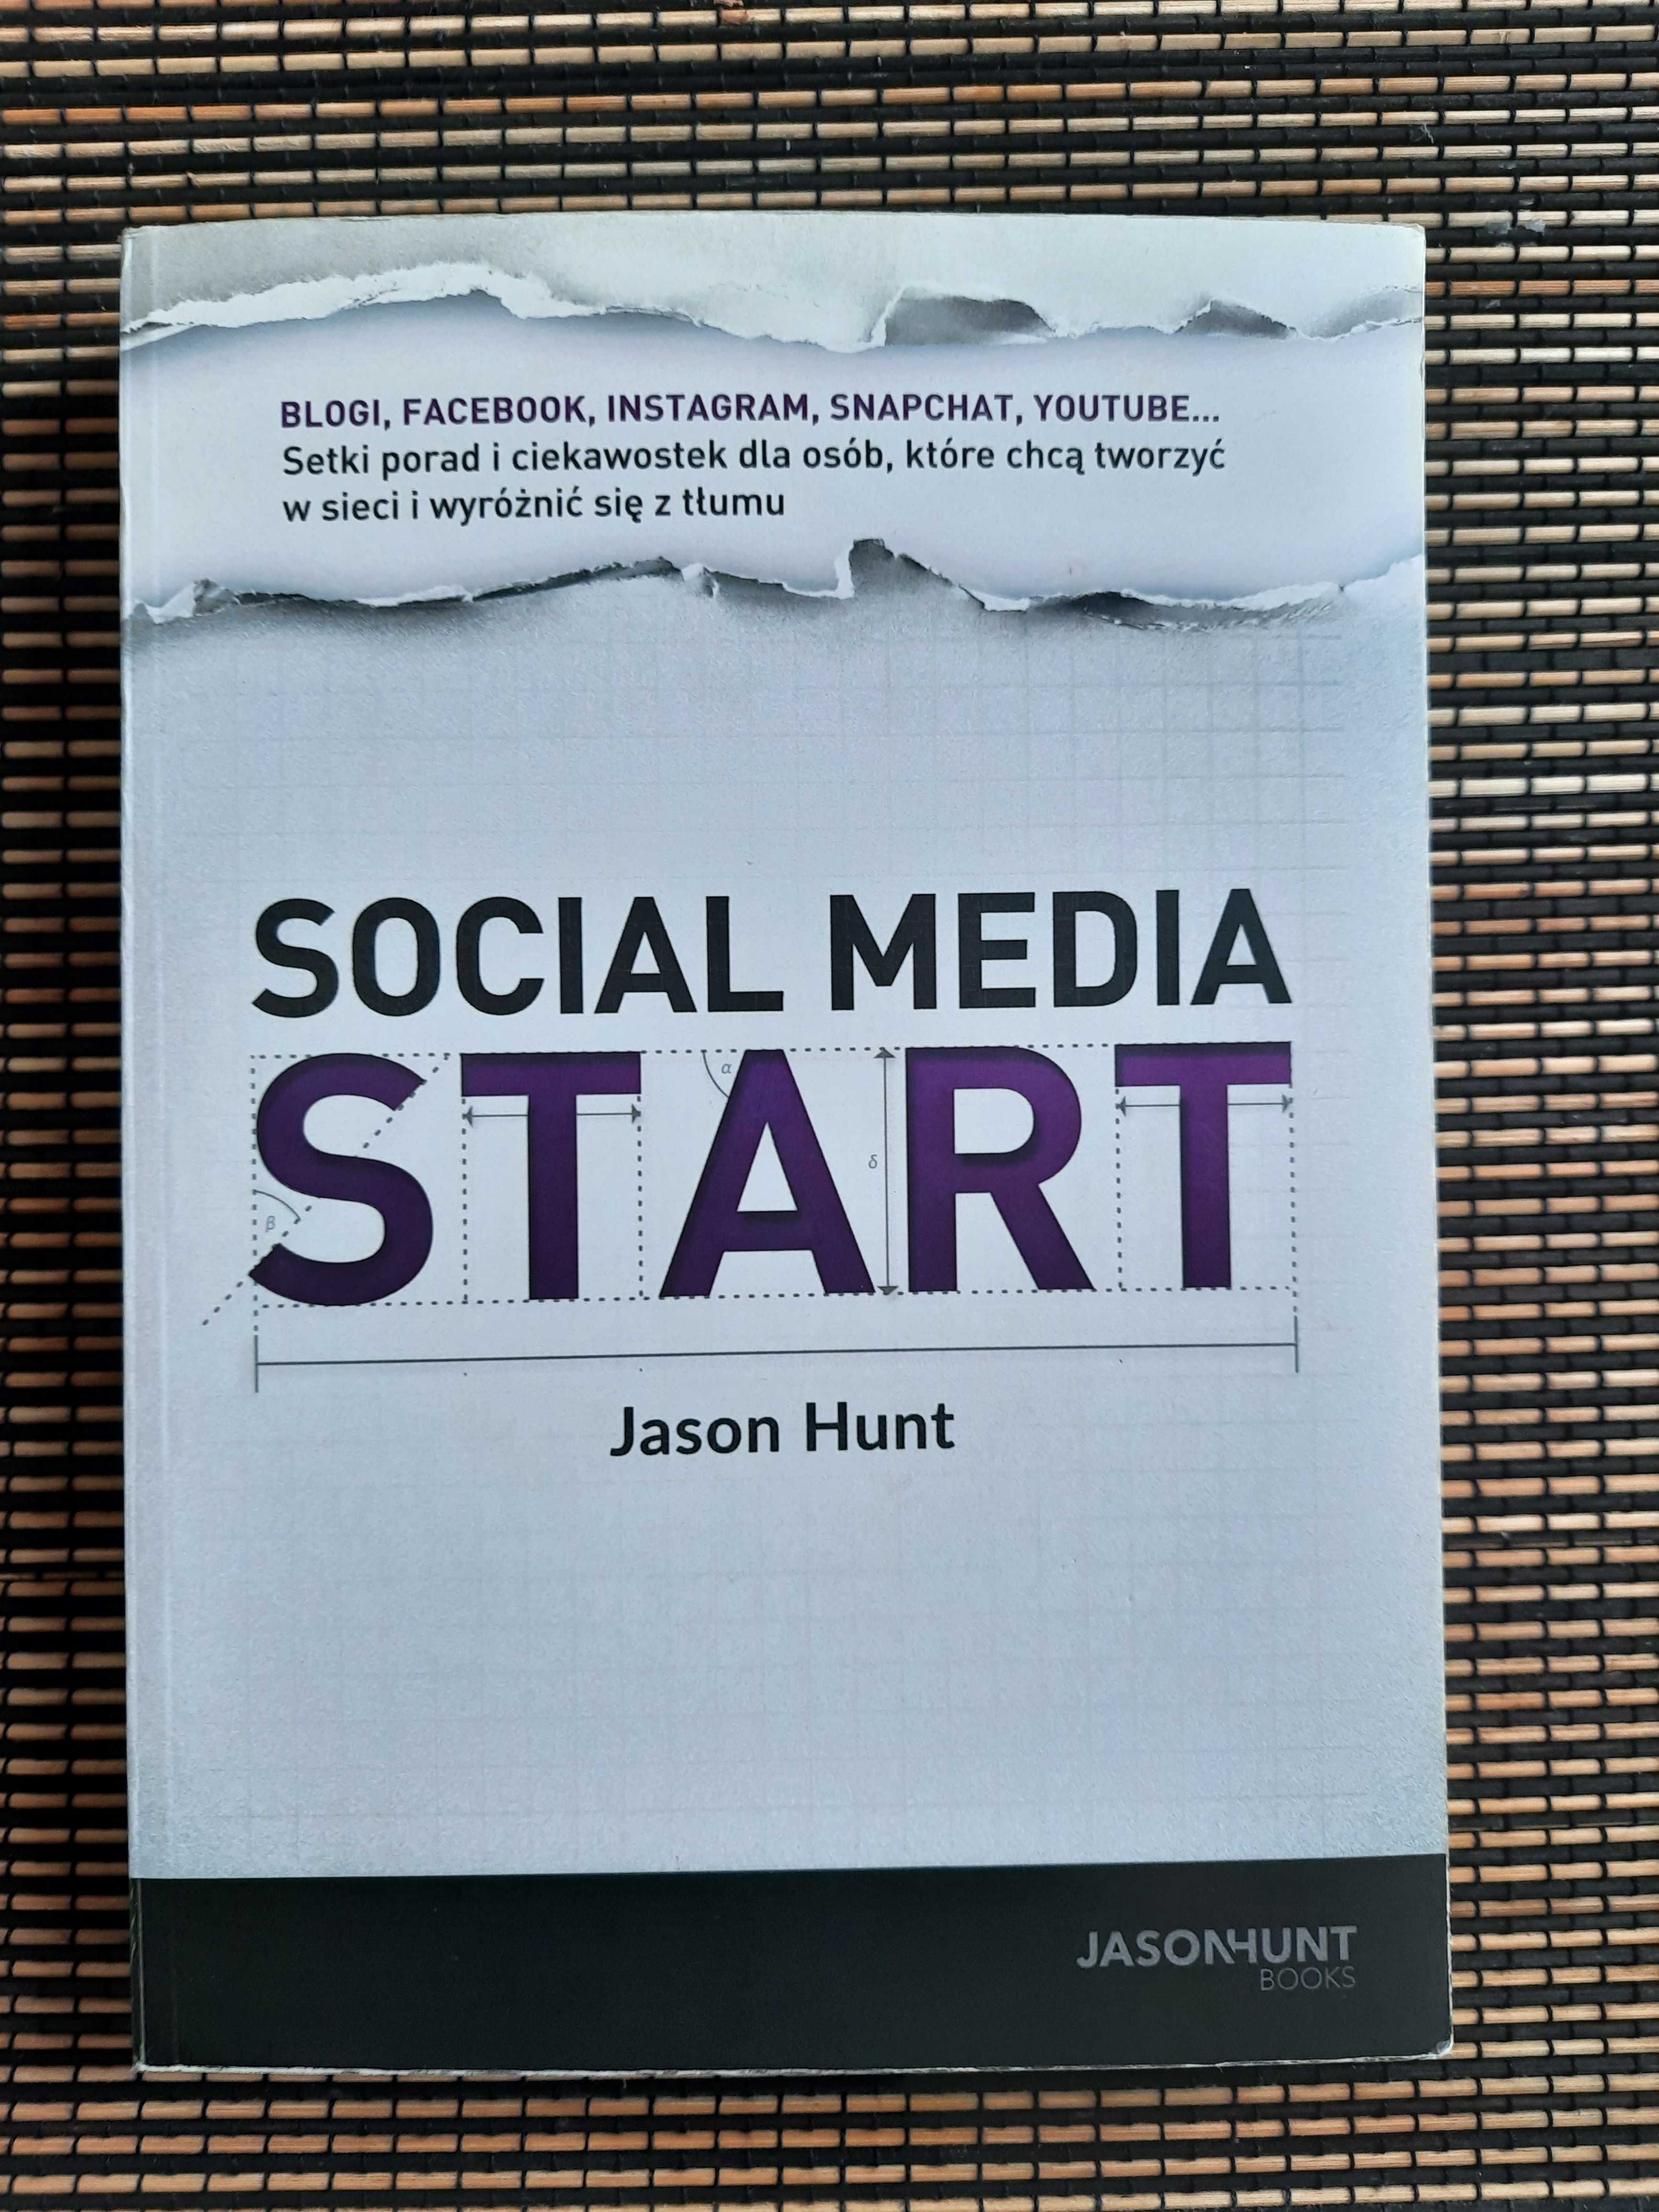 Książka "Social media START" Jason Hunt